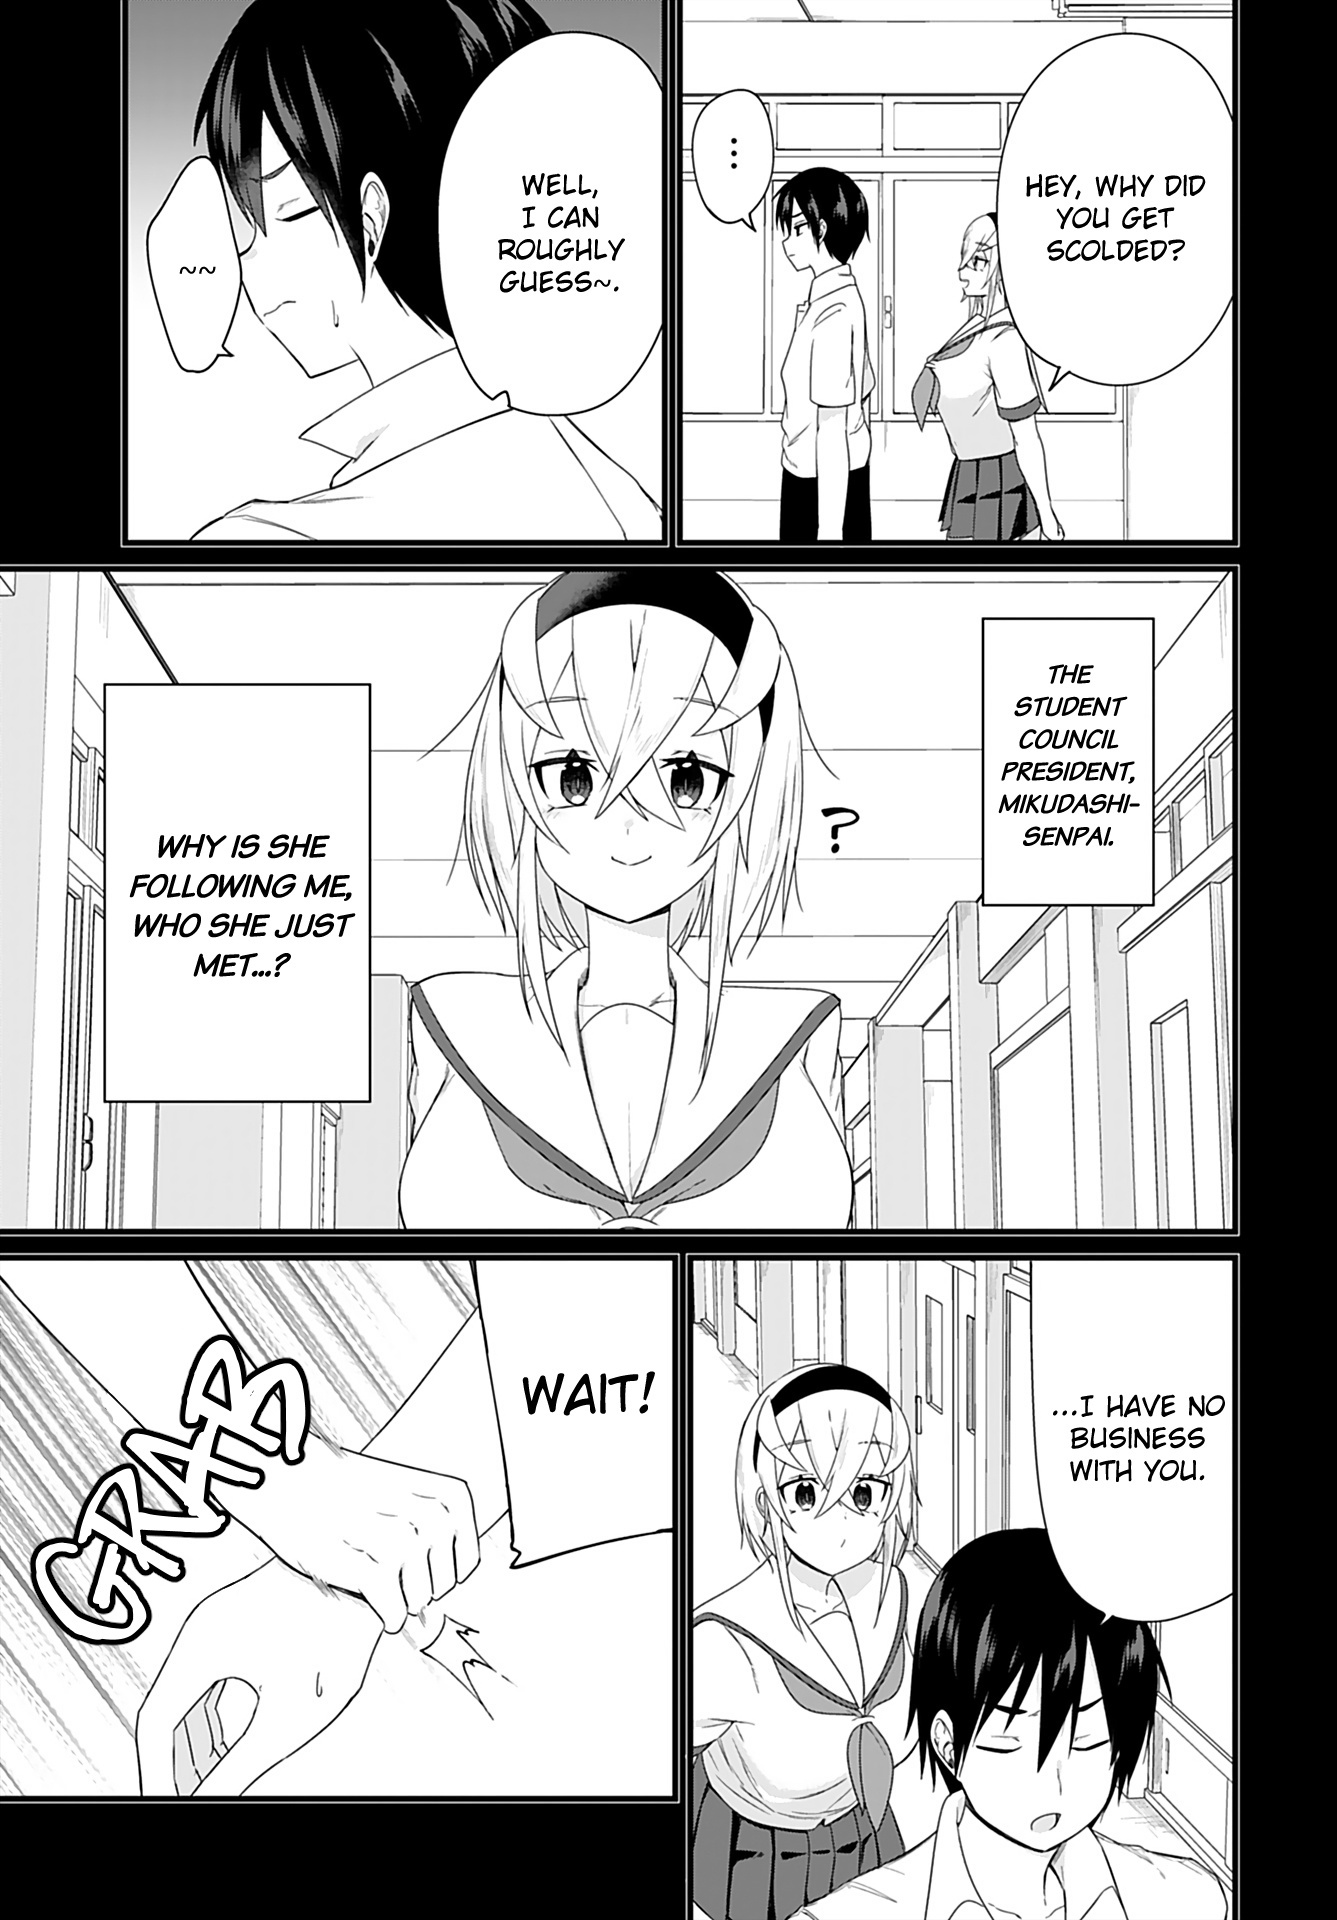 Mikudashi Ibari Ha Mikudashitai! - Page 1